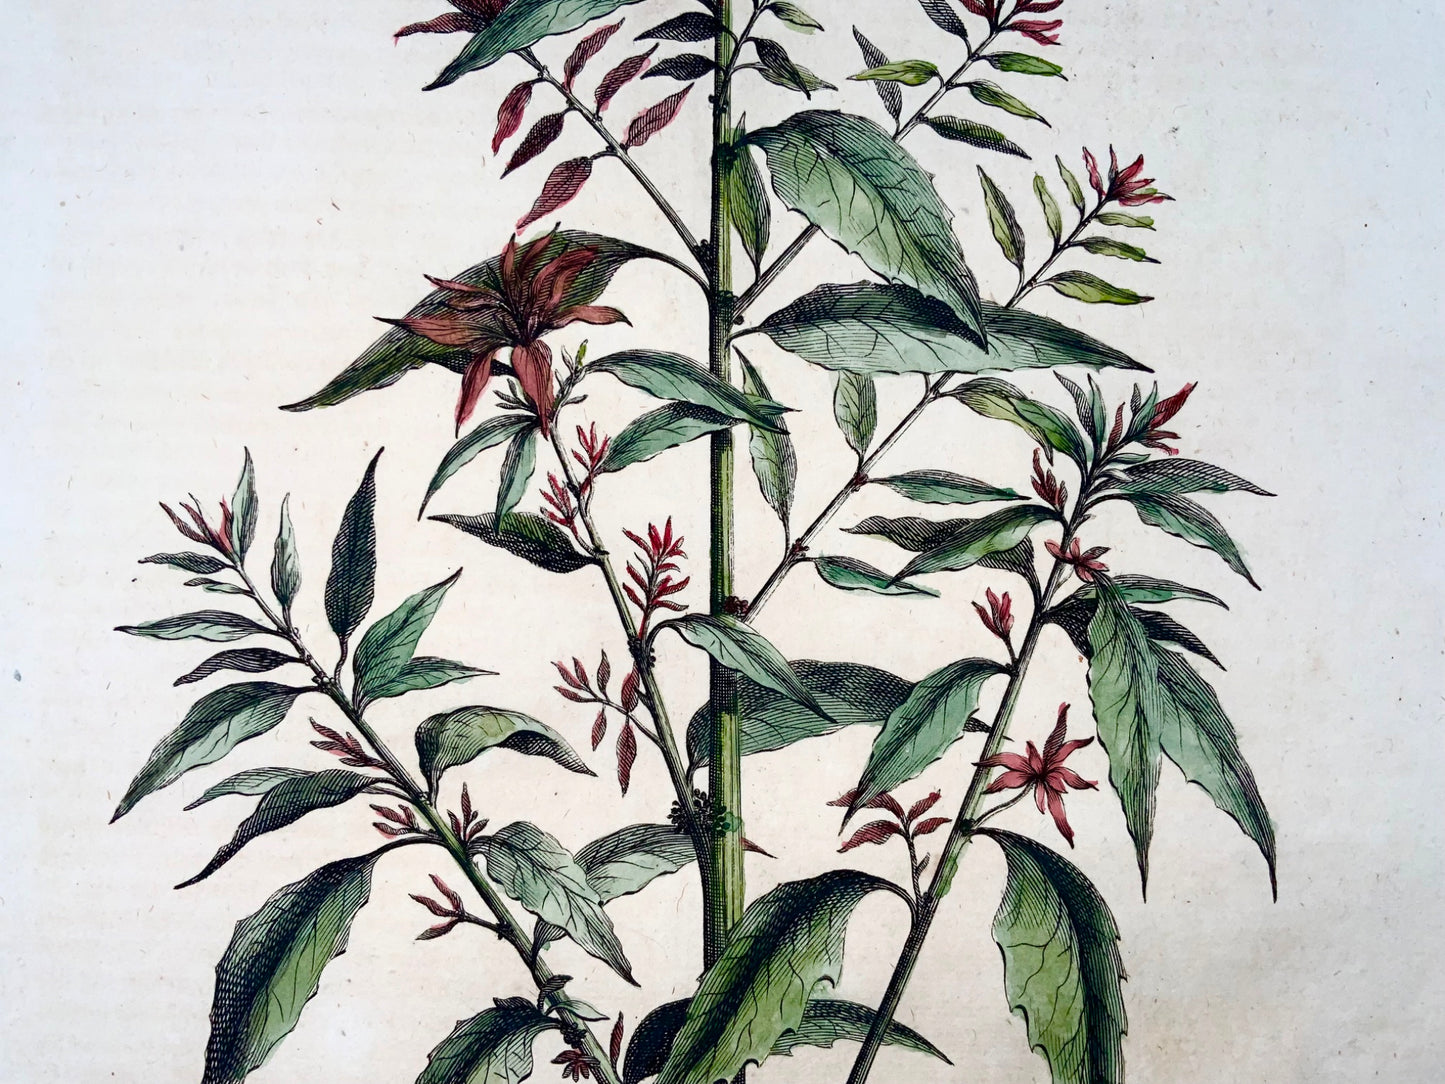 1696 Ambrosia mexicana, foglio grande, botanica, Abraham Munting, foglio grande